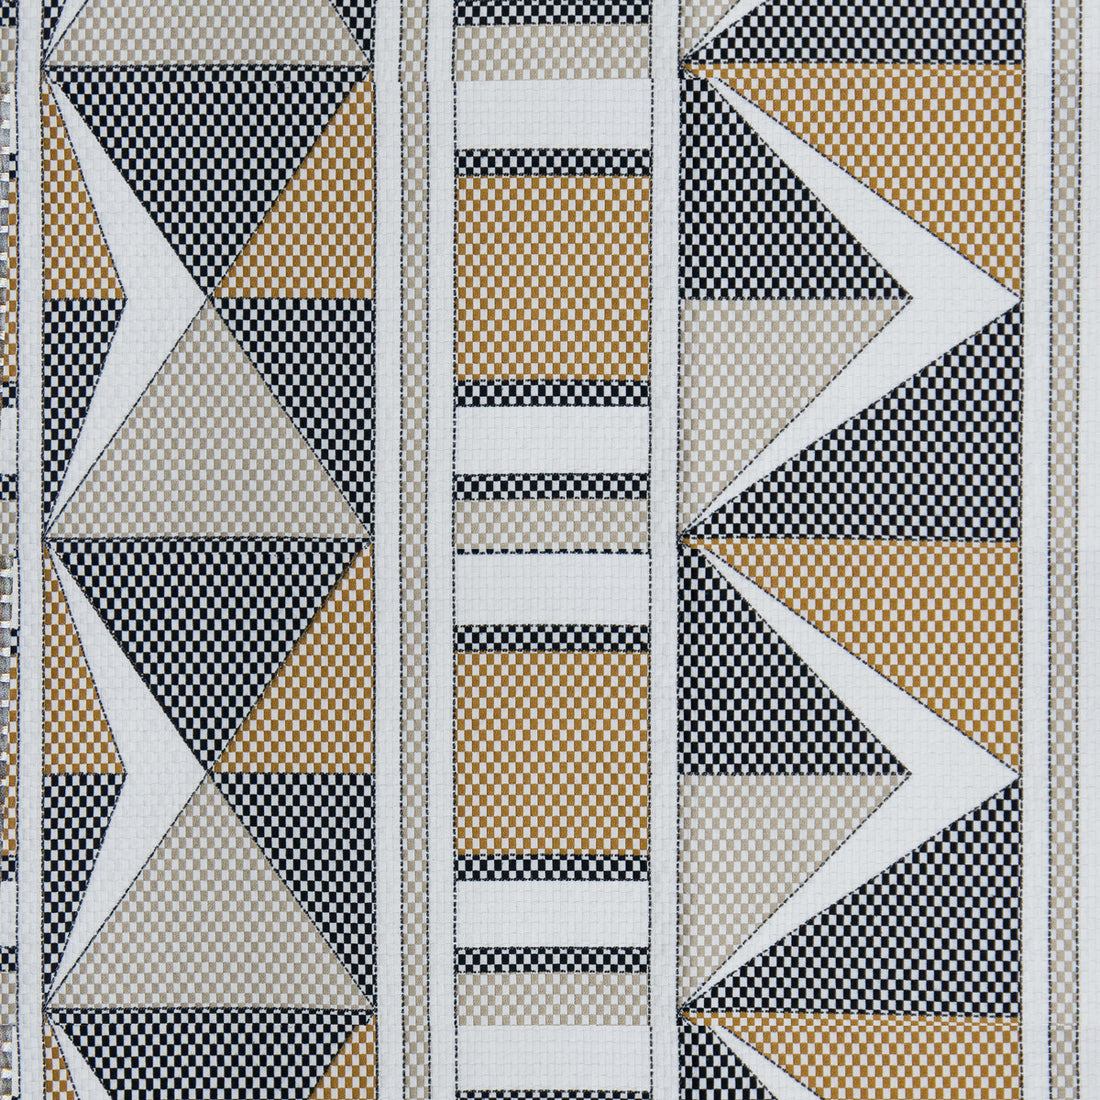 Kf Gyd fabric - pattern GDT5588.002.0 - by Gaston y Daniela in the Gaston Nuevo Mundo collection